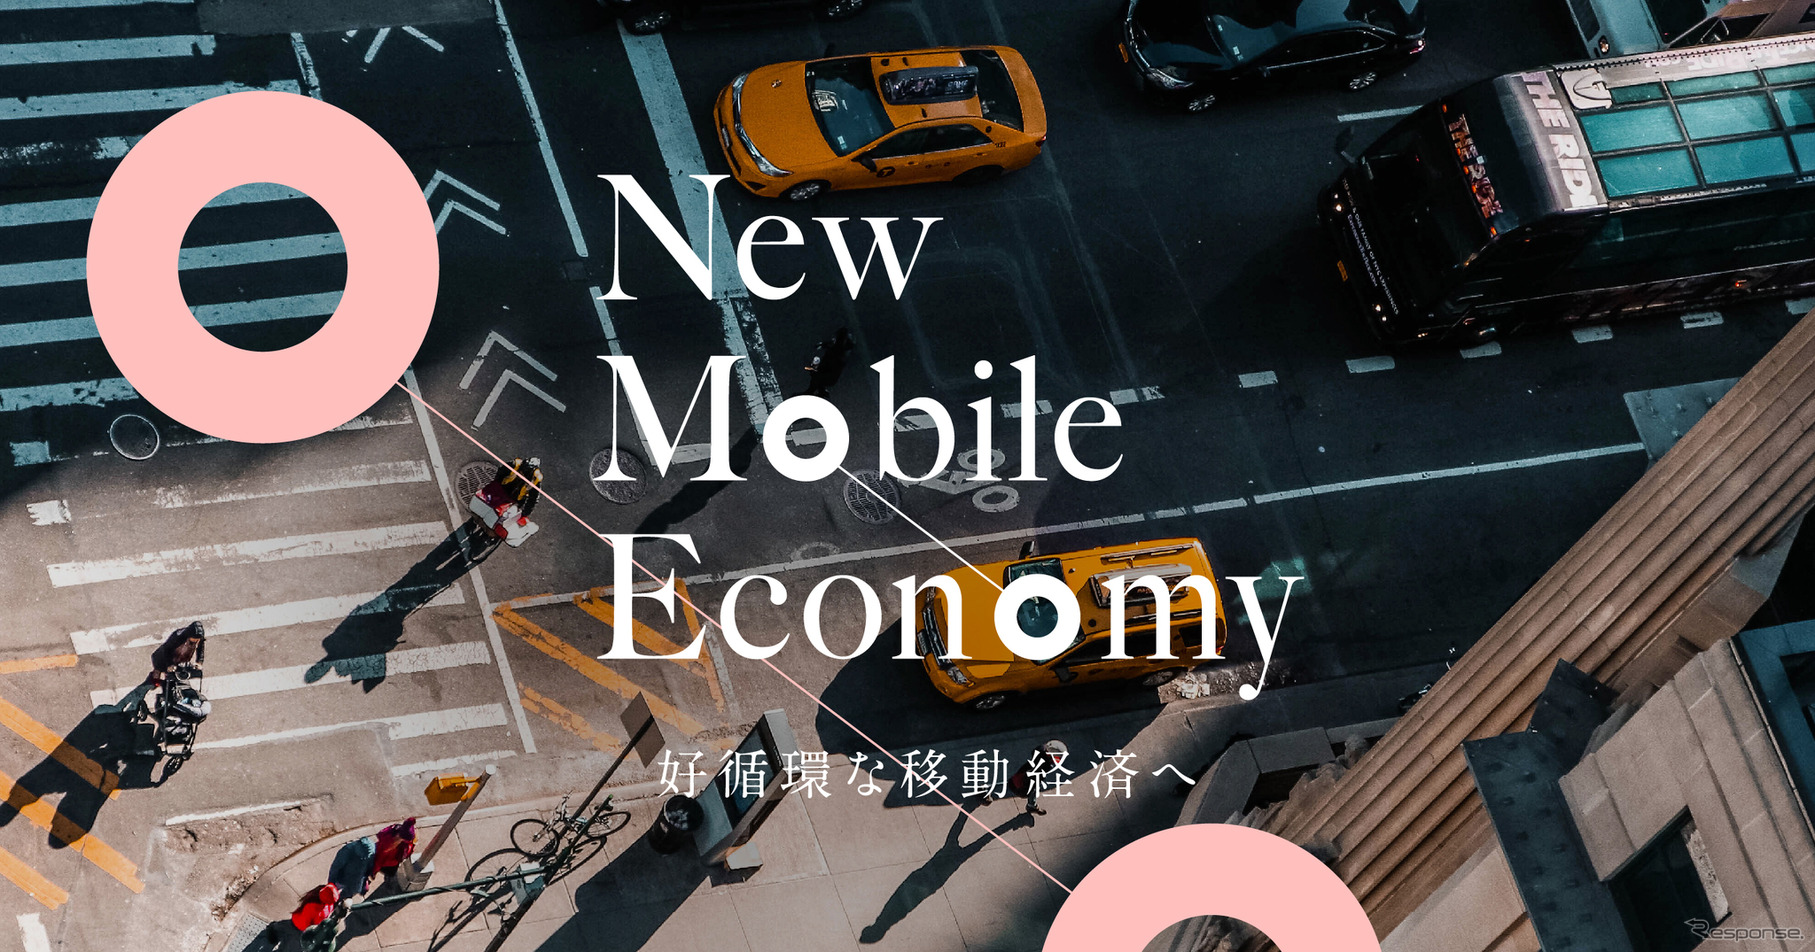 New Mobile Economy